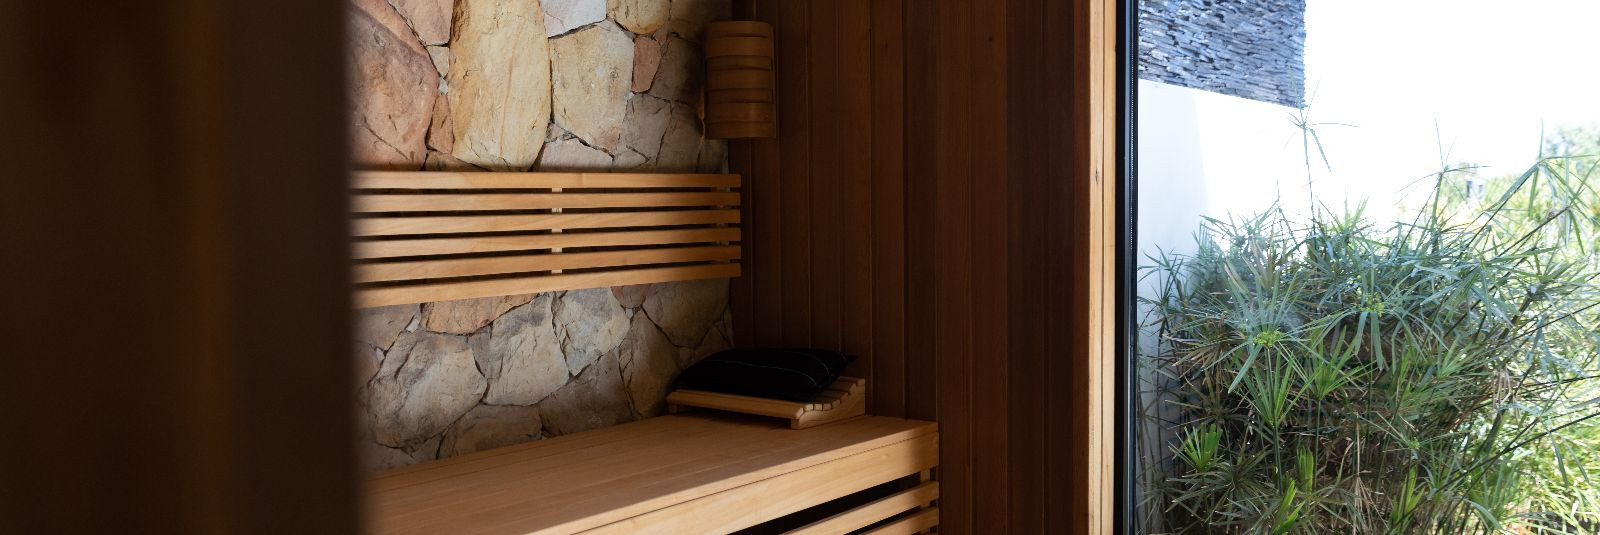 Eestis on saun traditsiooniline paik, kus inimesed käivad lõõgastumas, turgutamas oma keha ning nautimas hingelist rahu. Kuid imagineeri saun, mis sulandub lood